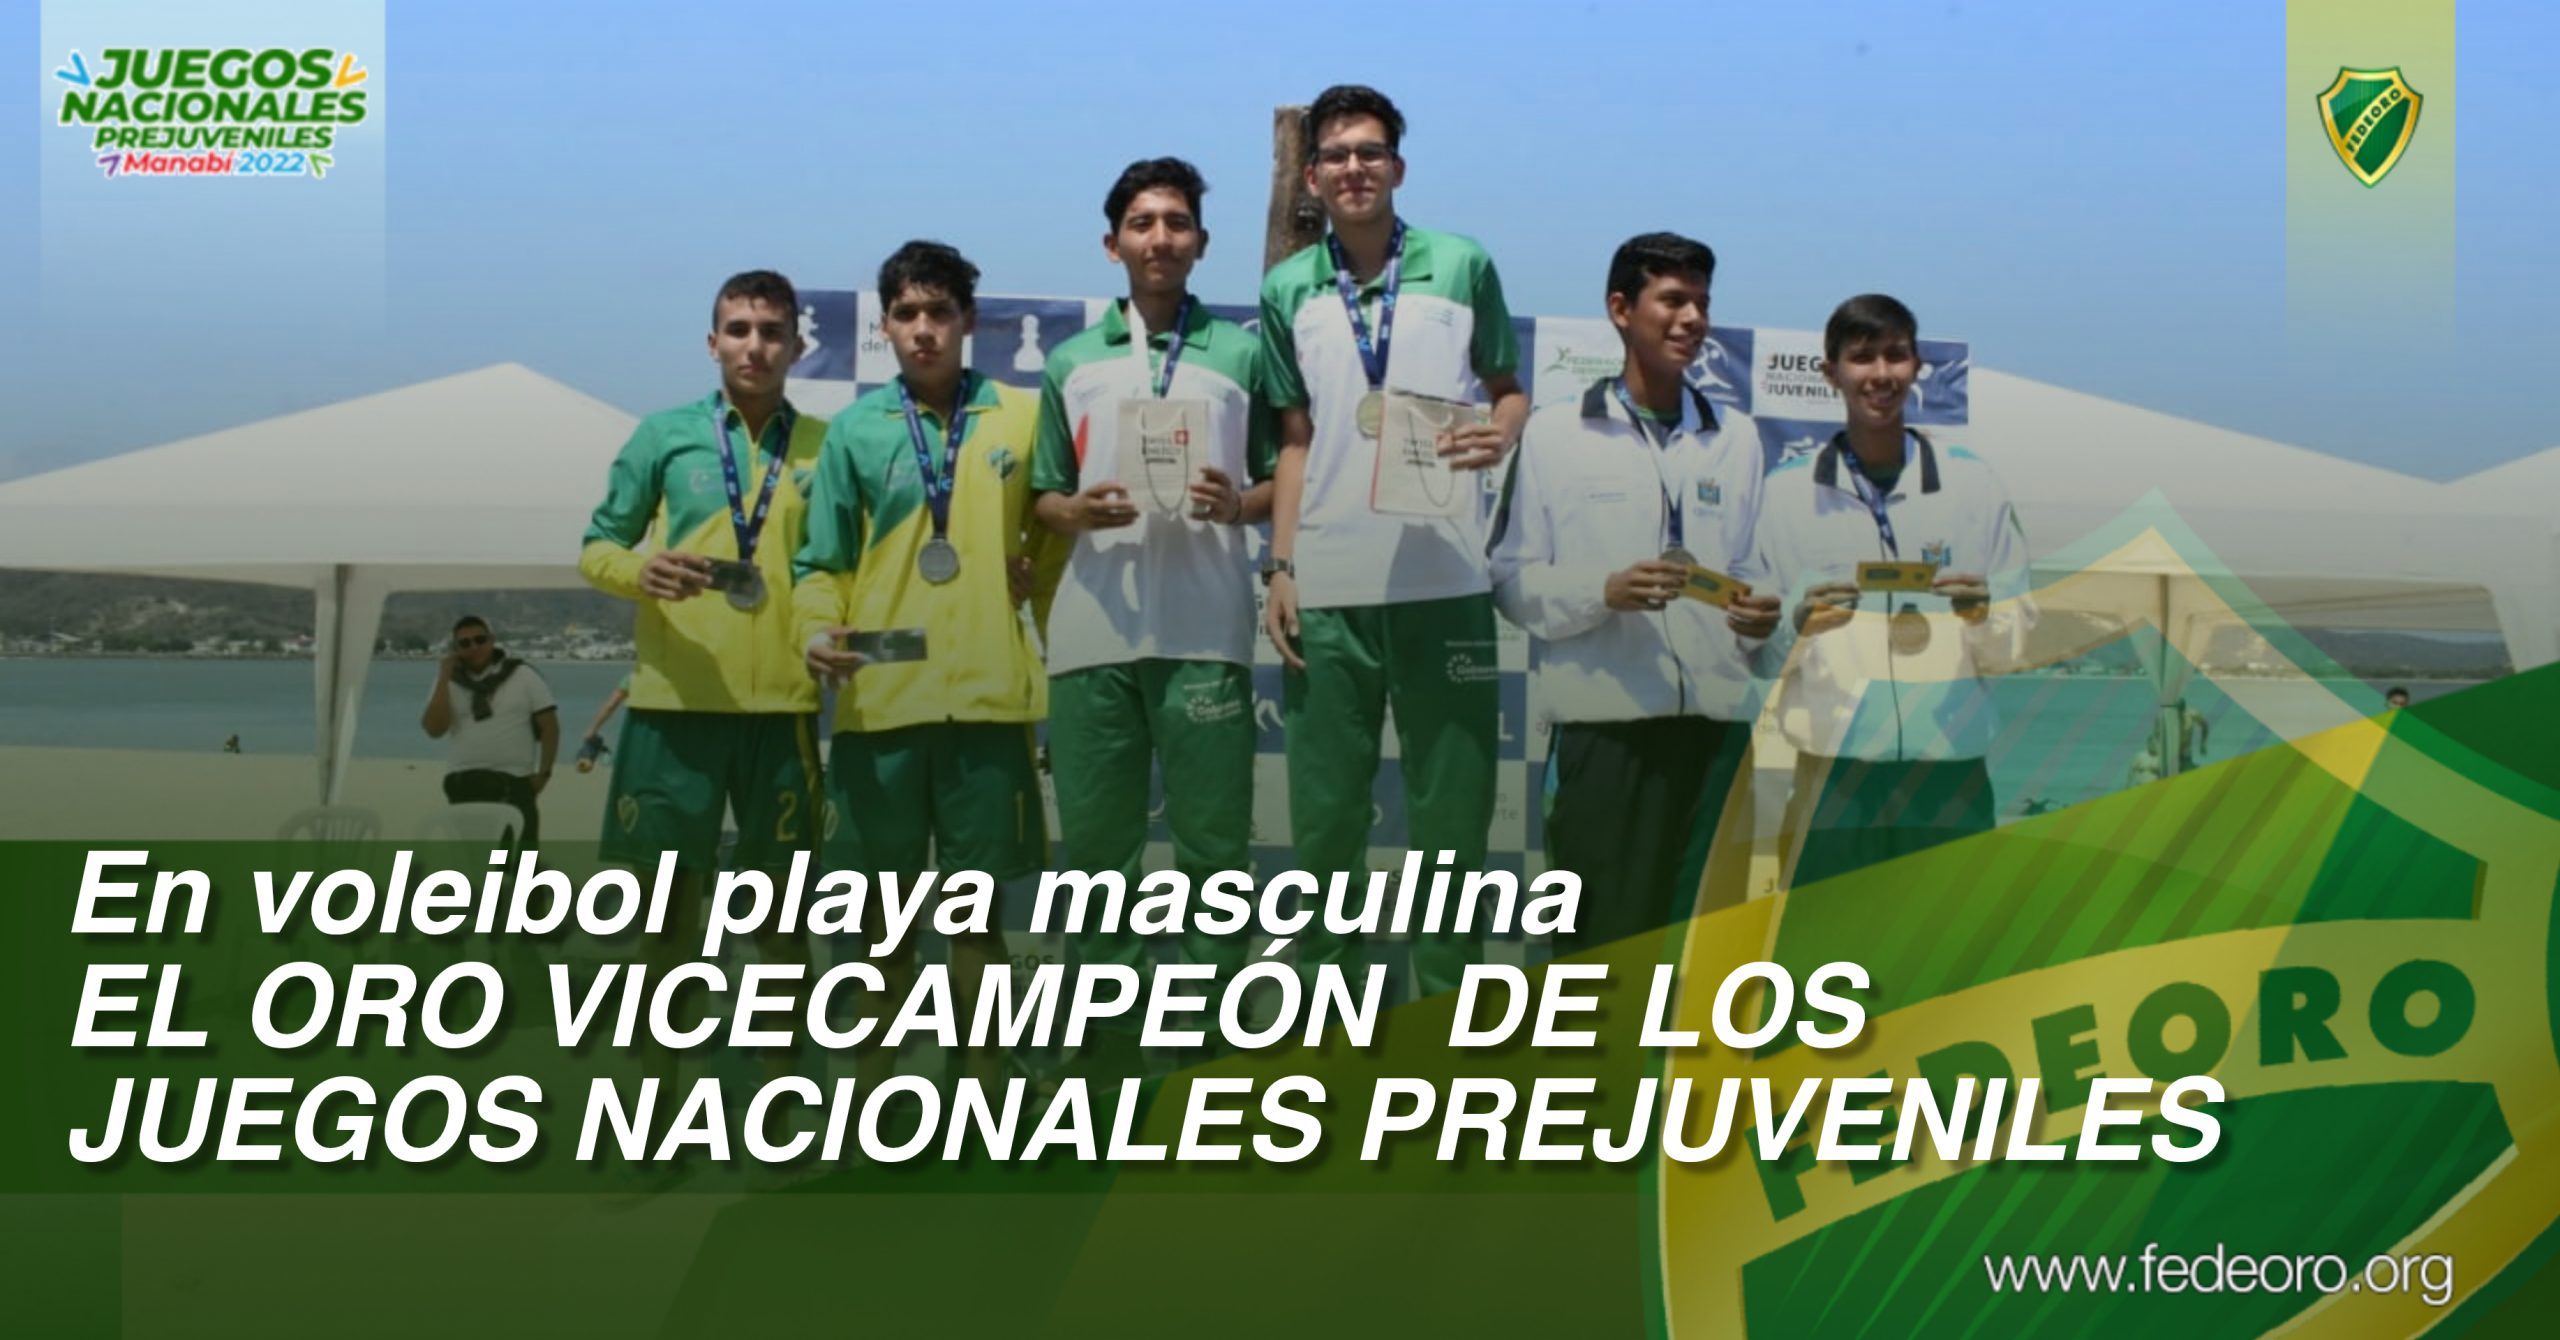 En voleibol playa masculina<br>EL ORO VICECAMPEÓN  DE LOS JUEGOS NACIONALES PREJUVENILES